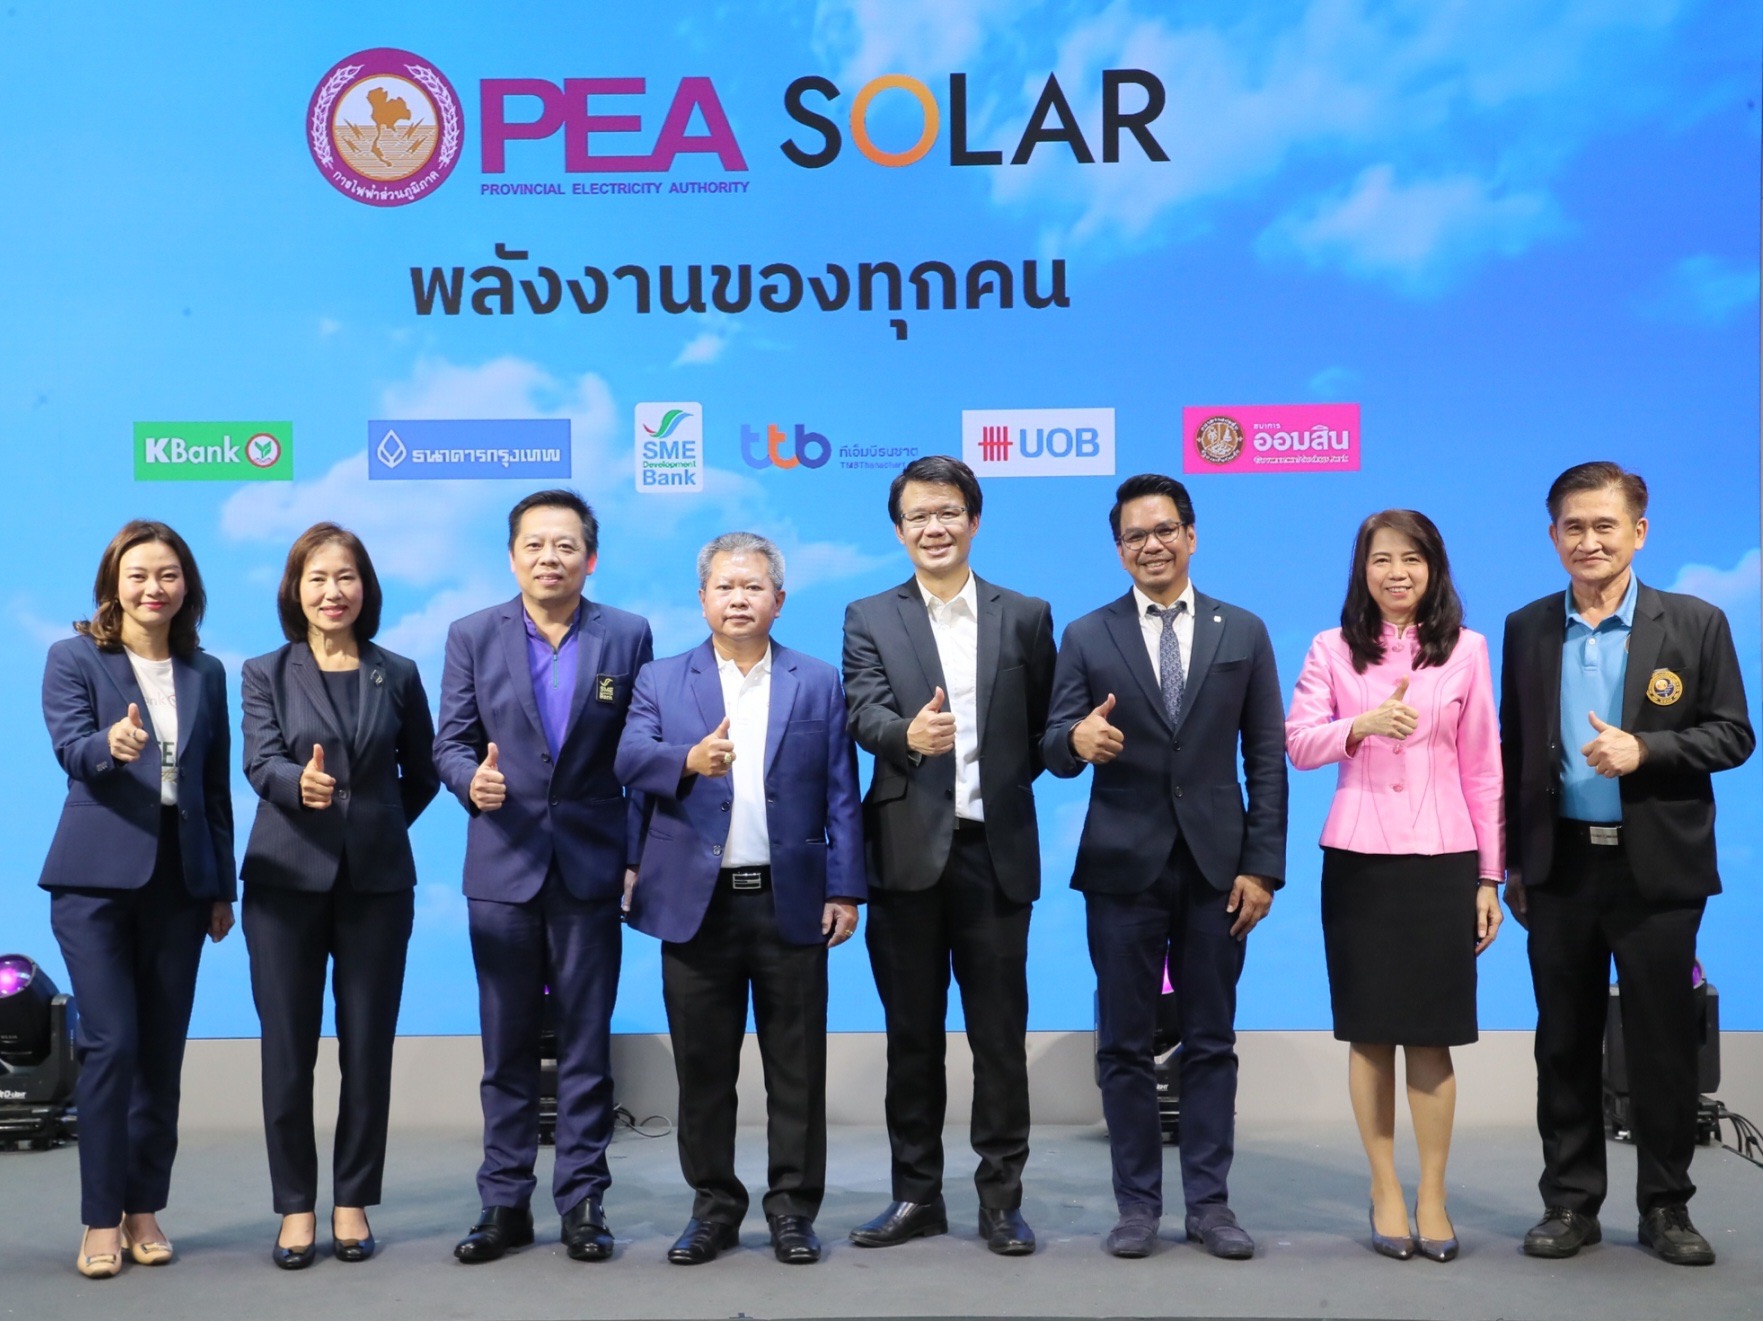 ออมสิน ผนึกความร่วมมือ PEA สนับสนุนการใช้พลังงานหมุนเวียน